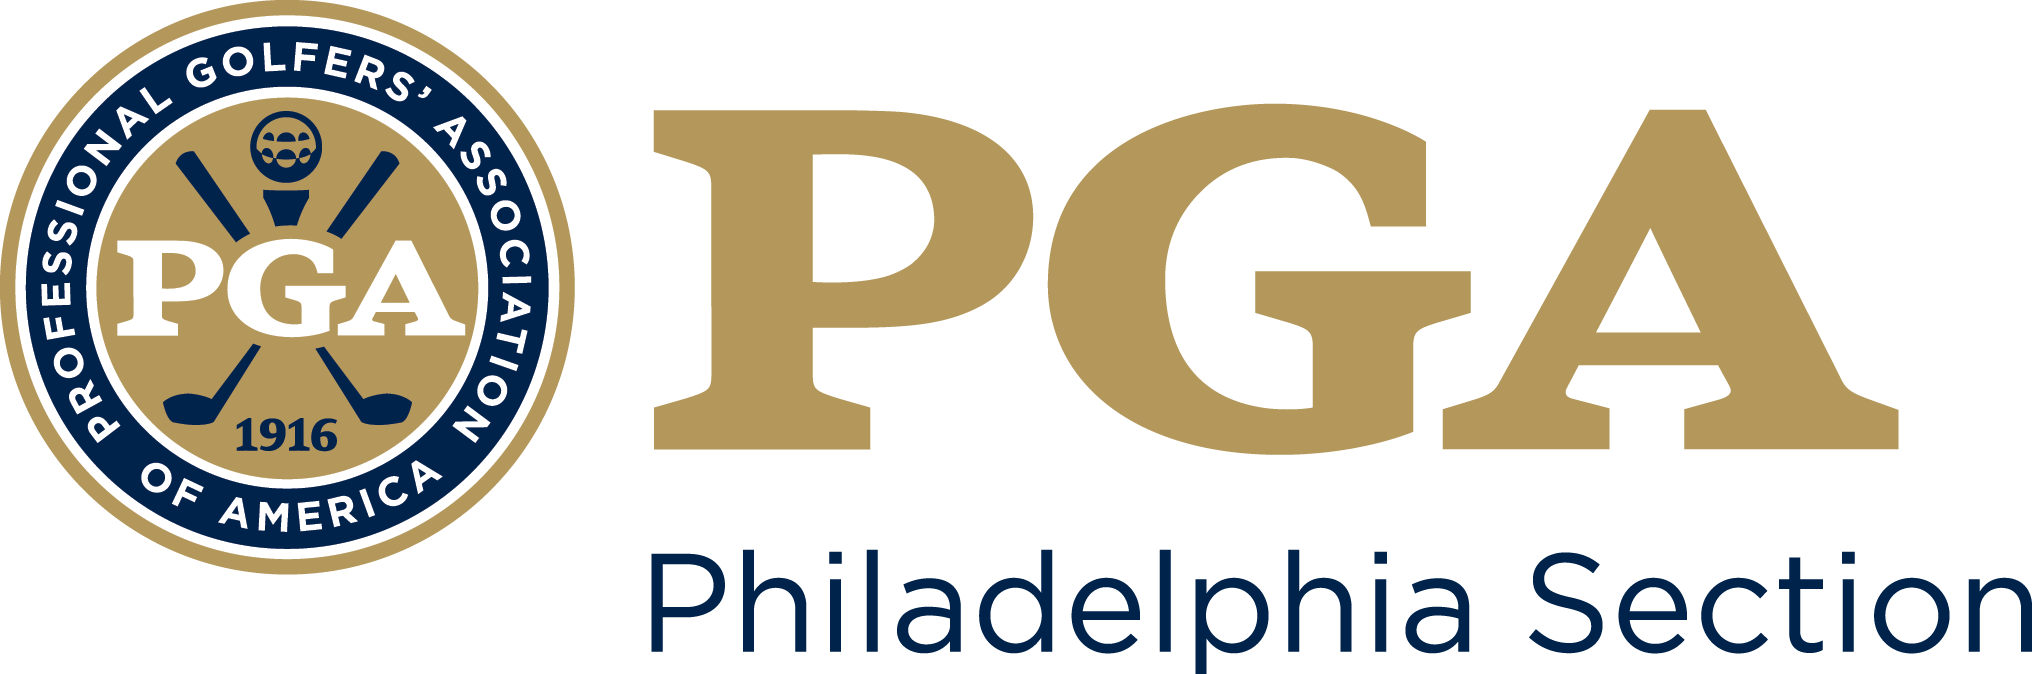 Philadelphia PGA